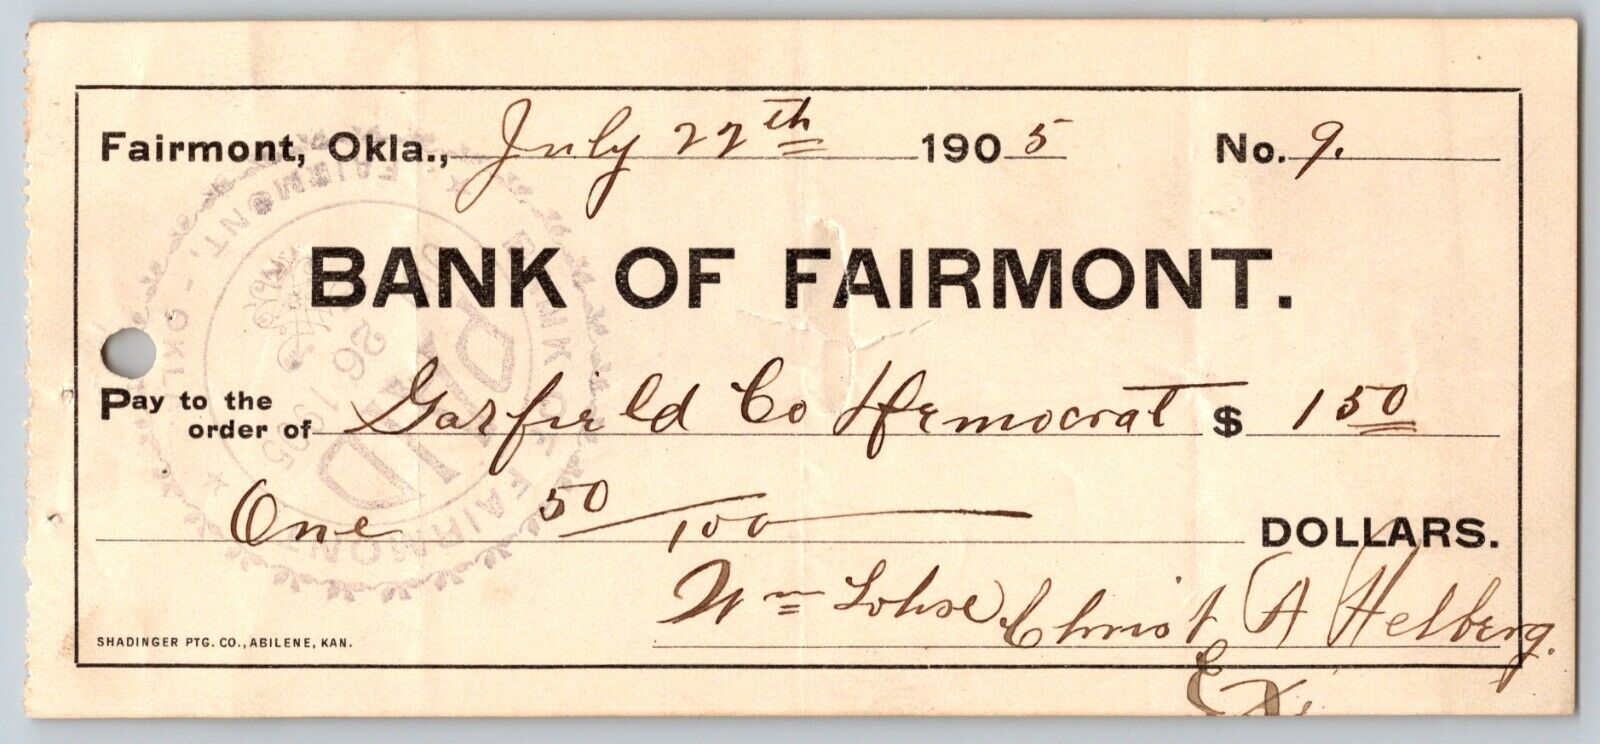 Fairmont Oklahoma Territorial 1905 $10 Bank of Fairmont Bank Check - Very Scarce